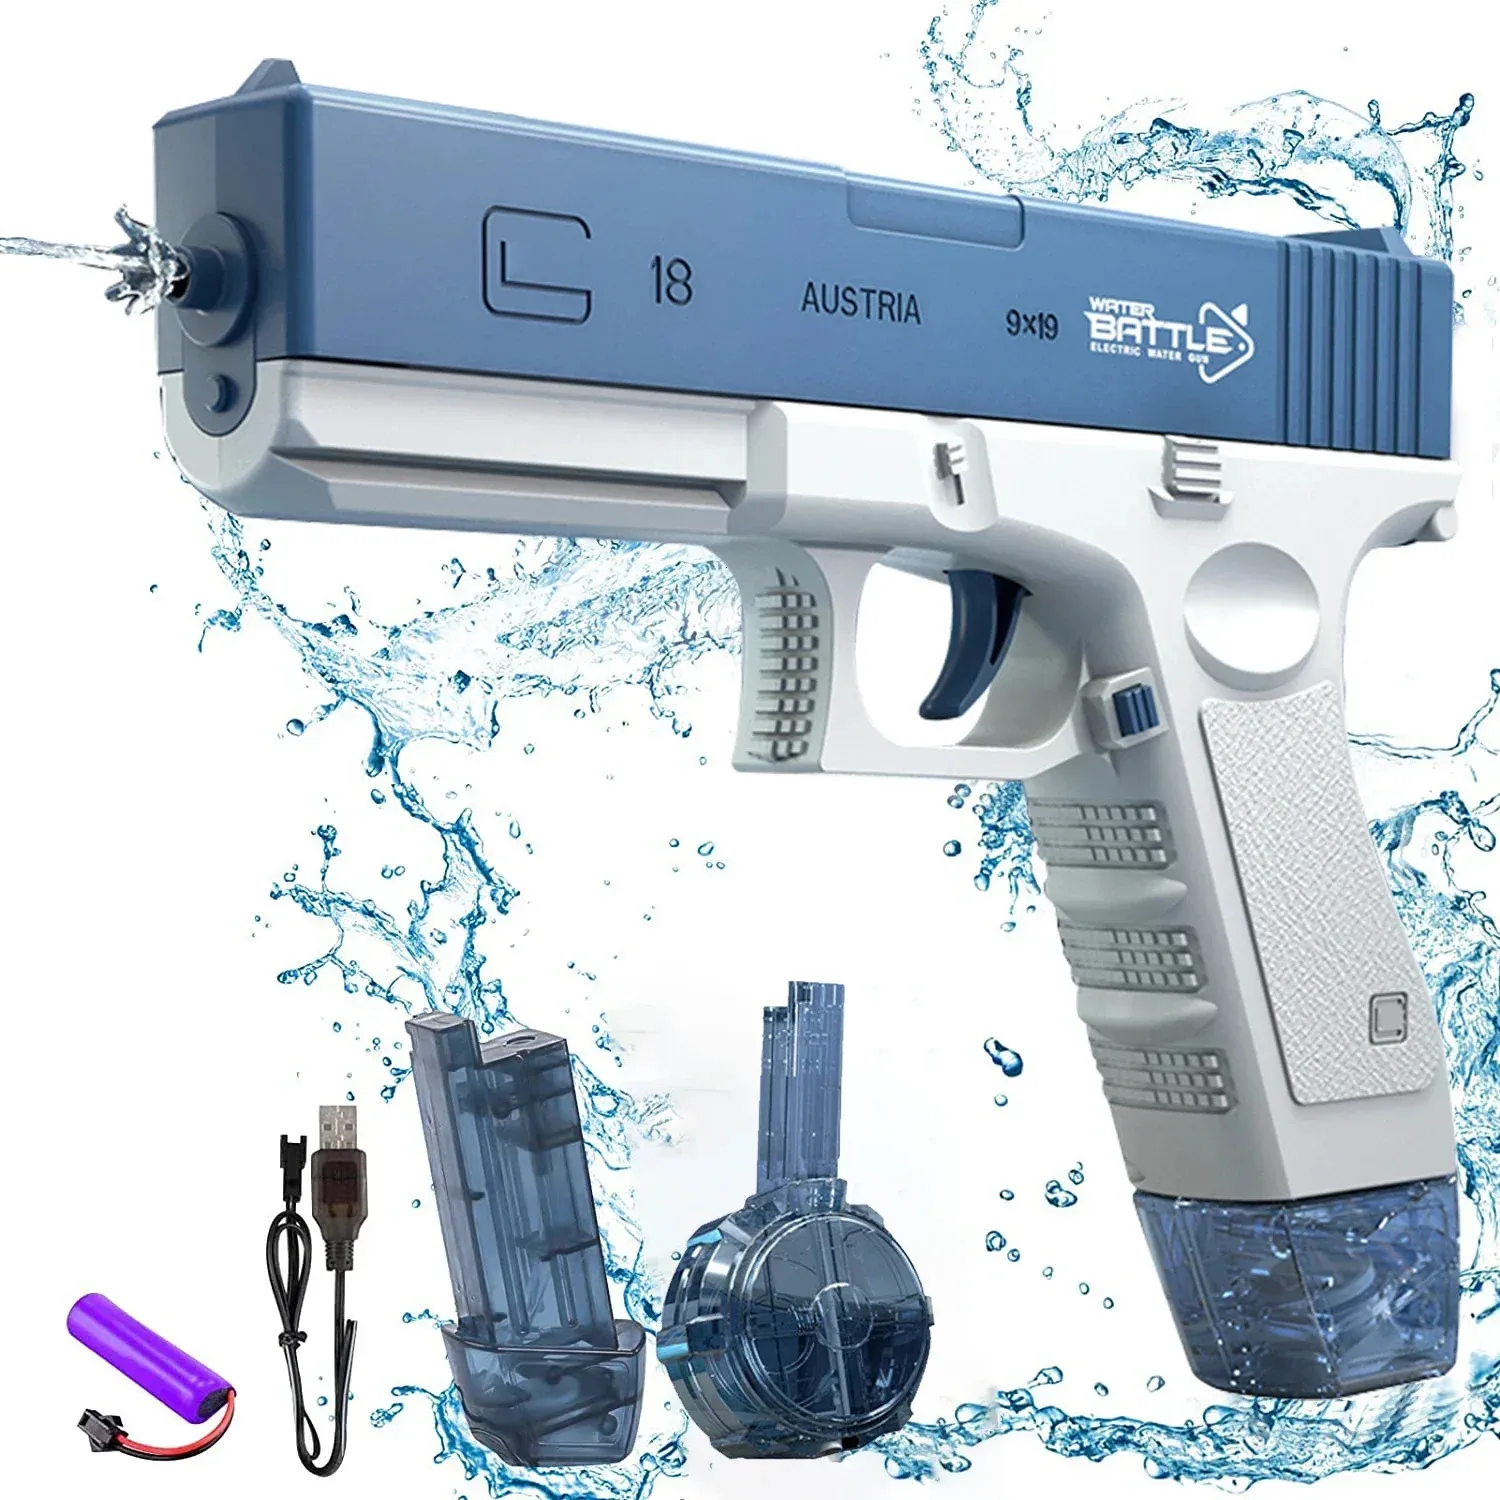 Pistola elettrica pistola pistola che spara giocattolo portatile per bambini estate spiaggia di combattimento esterno giocattoli fantasy per ragazzi gioco 240411